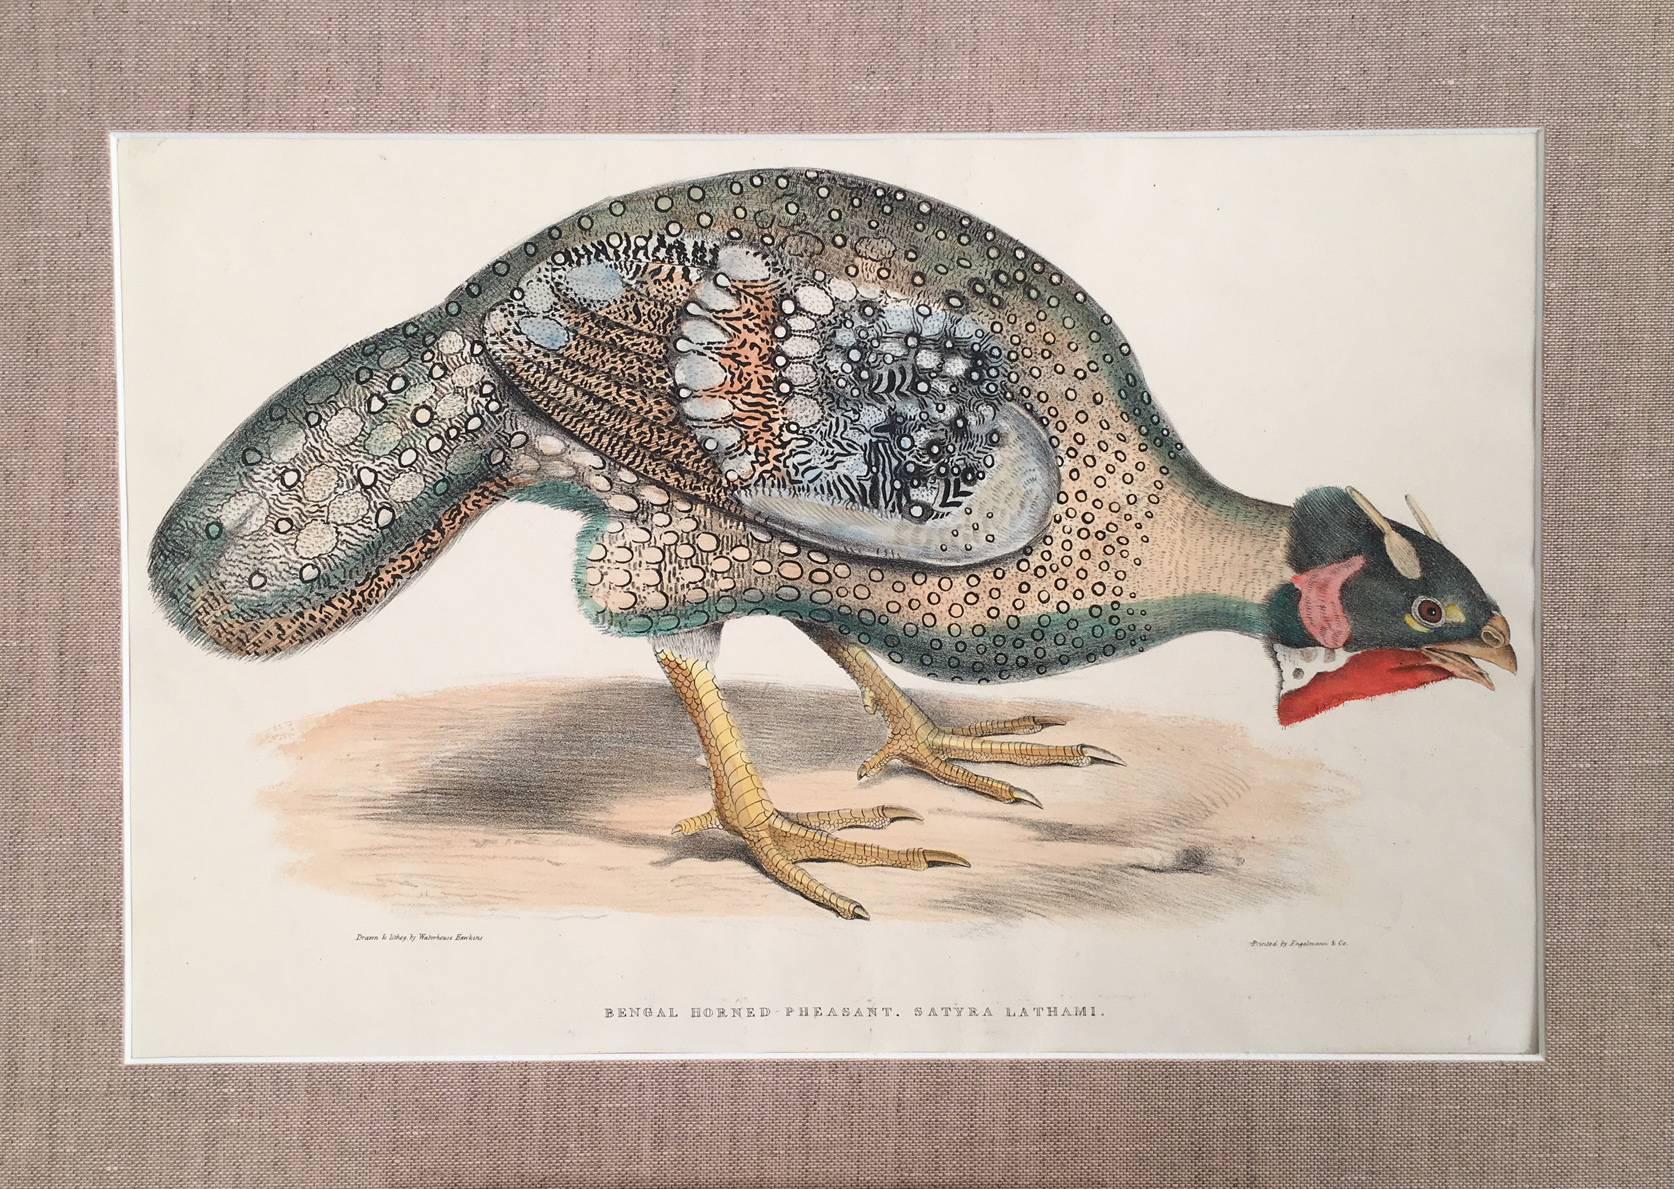 Bengel Horned Pheasant, Satira Lathami - Print by Benjamin Waterhouse Hawkins